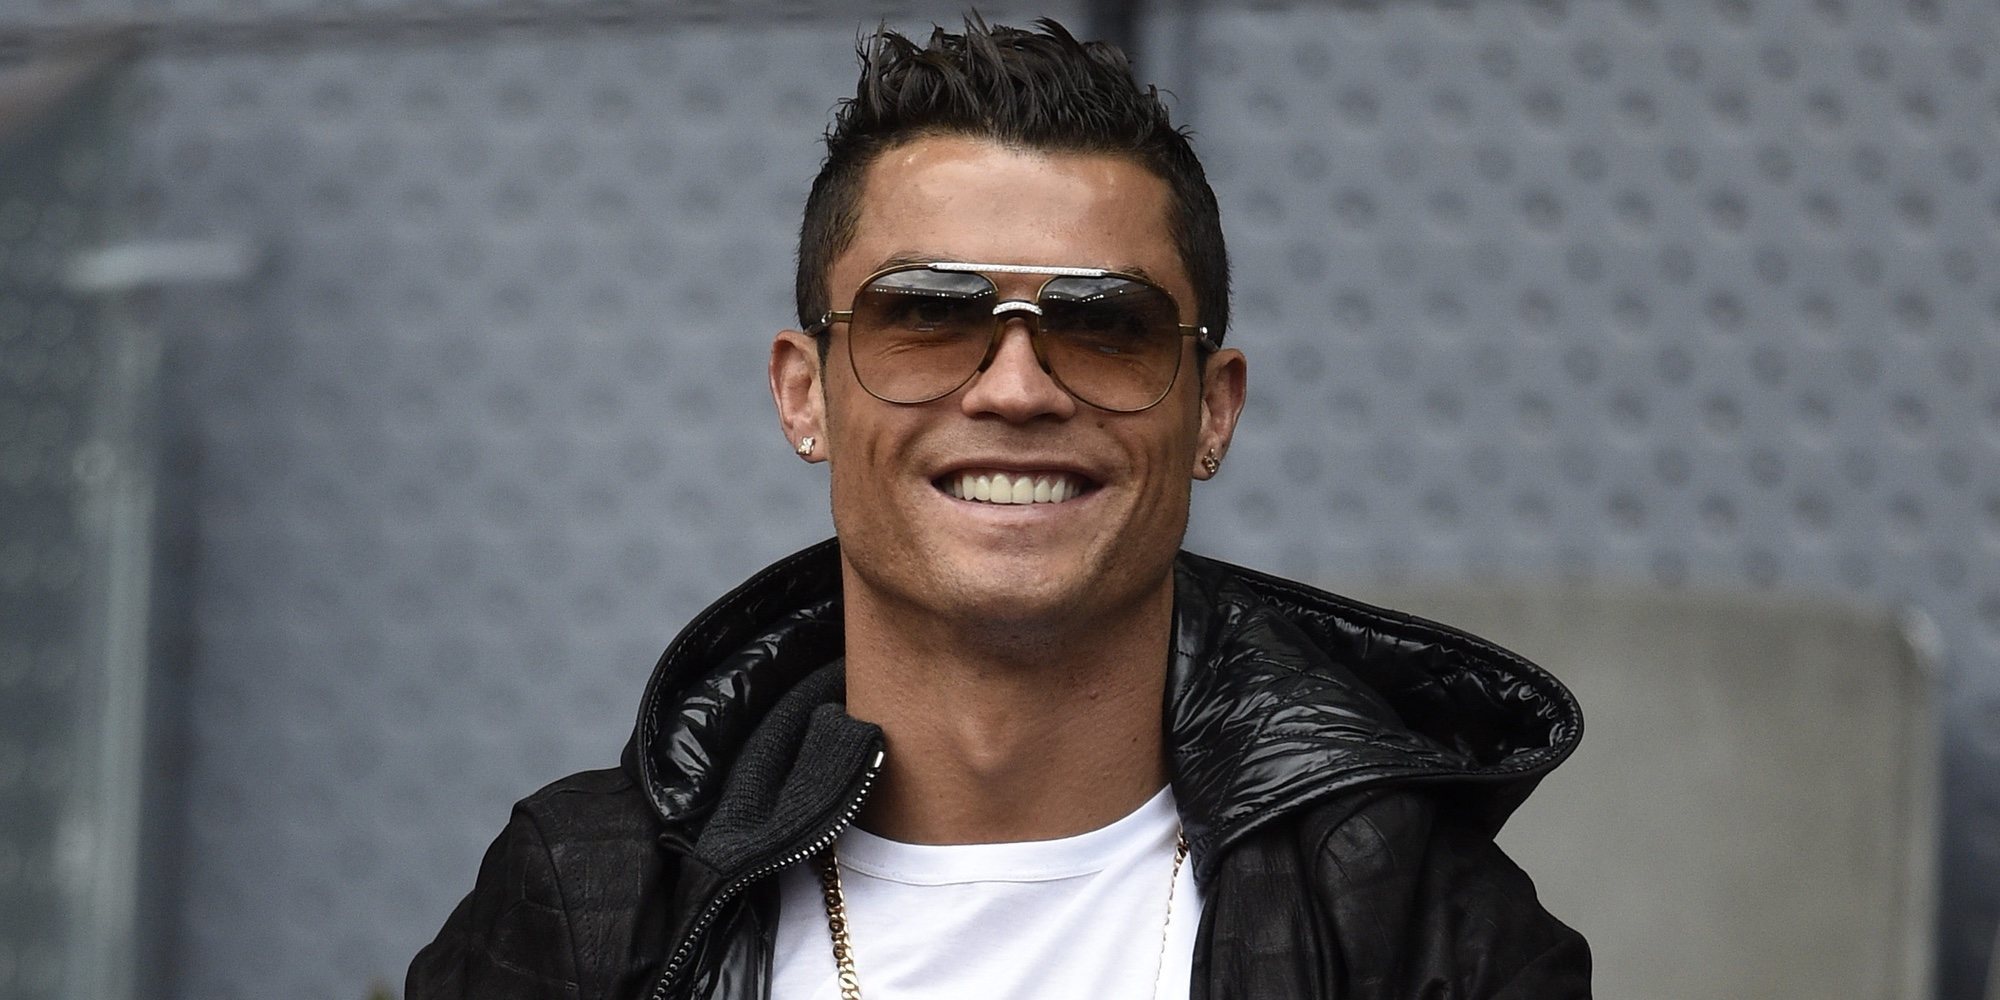 Cristiano Ronaldo, de fiesta con 60 modelos en un hotel de Turín tras perder contra el Atlético